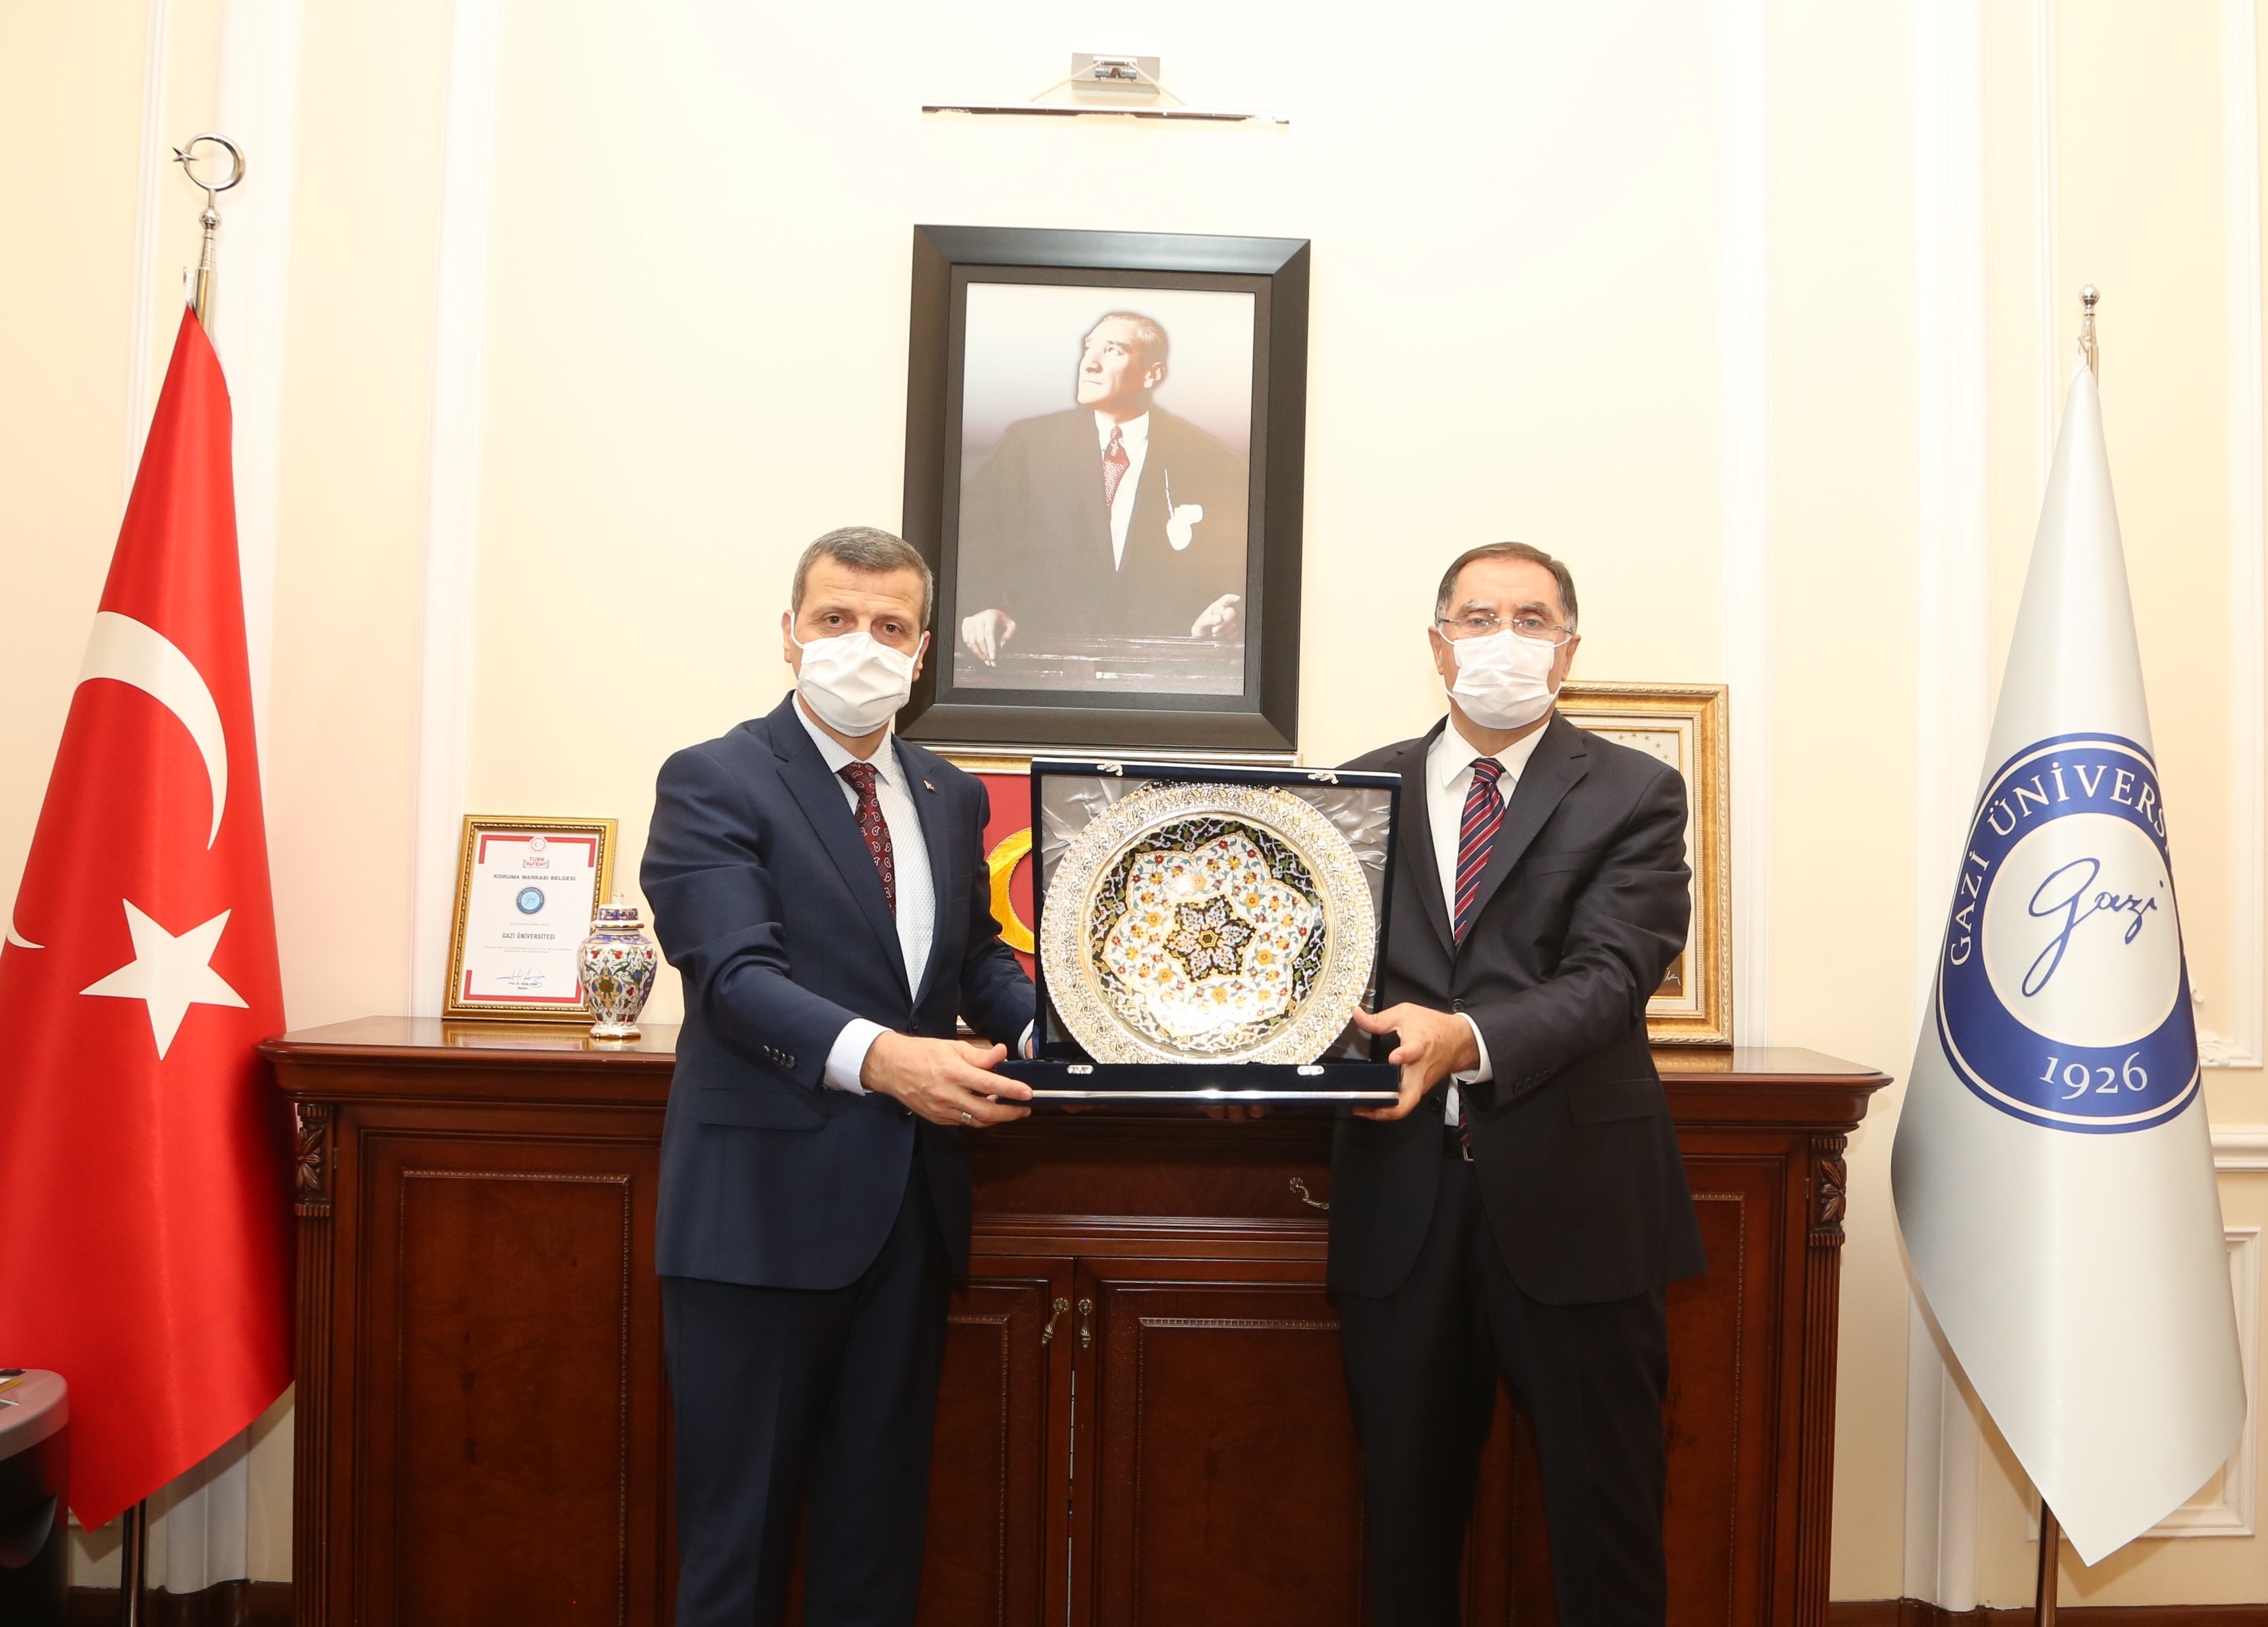 Kamu Başdenetçisi ve Cumhurbaşkanlığı Eski Başdanışmanı Şeref Malkoç, Üniversitemiz Rektörü Prof. Dr. Musa Yıldız’ı Makamında Ziyaret Etti